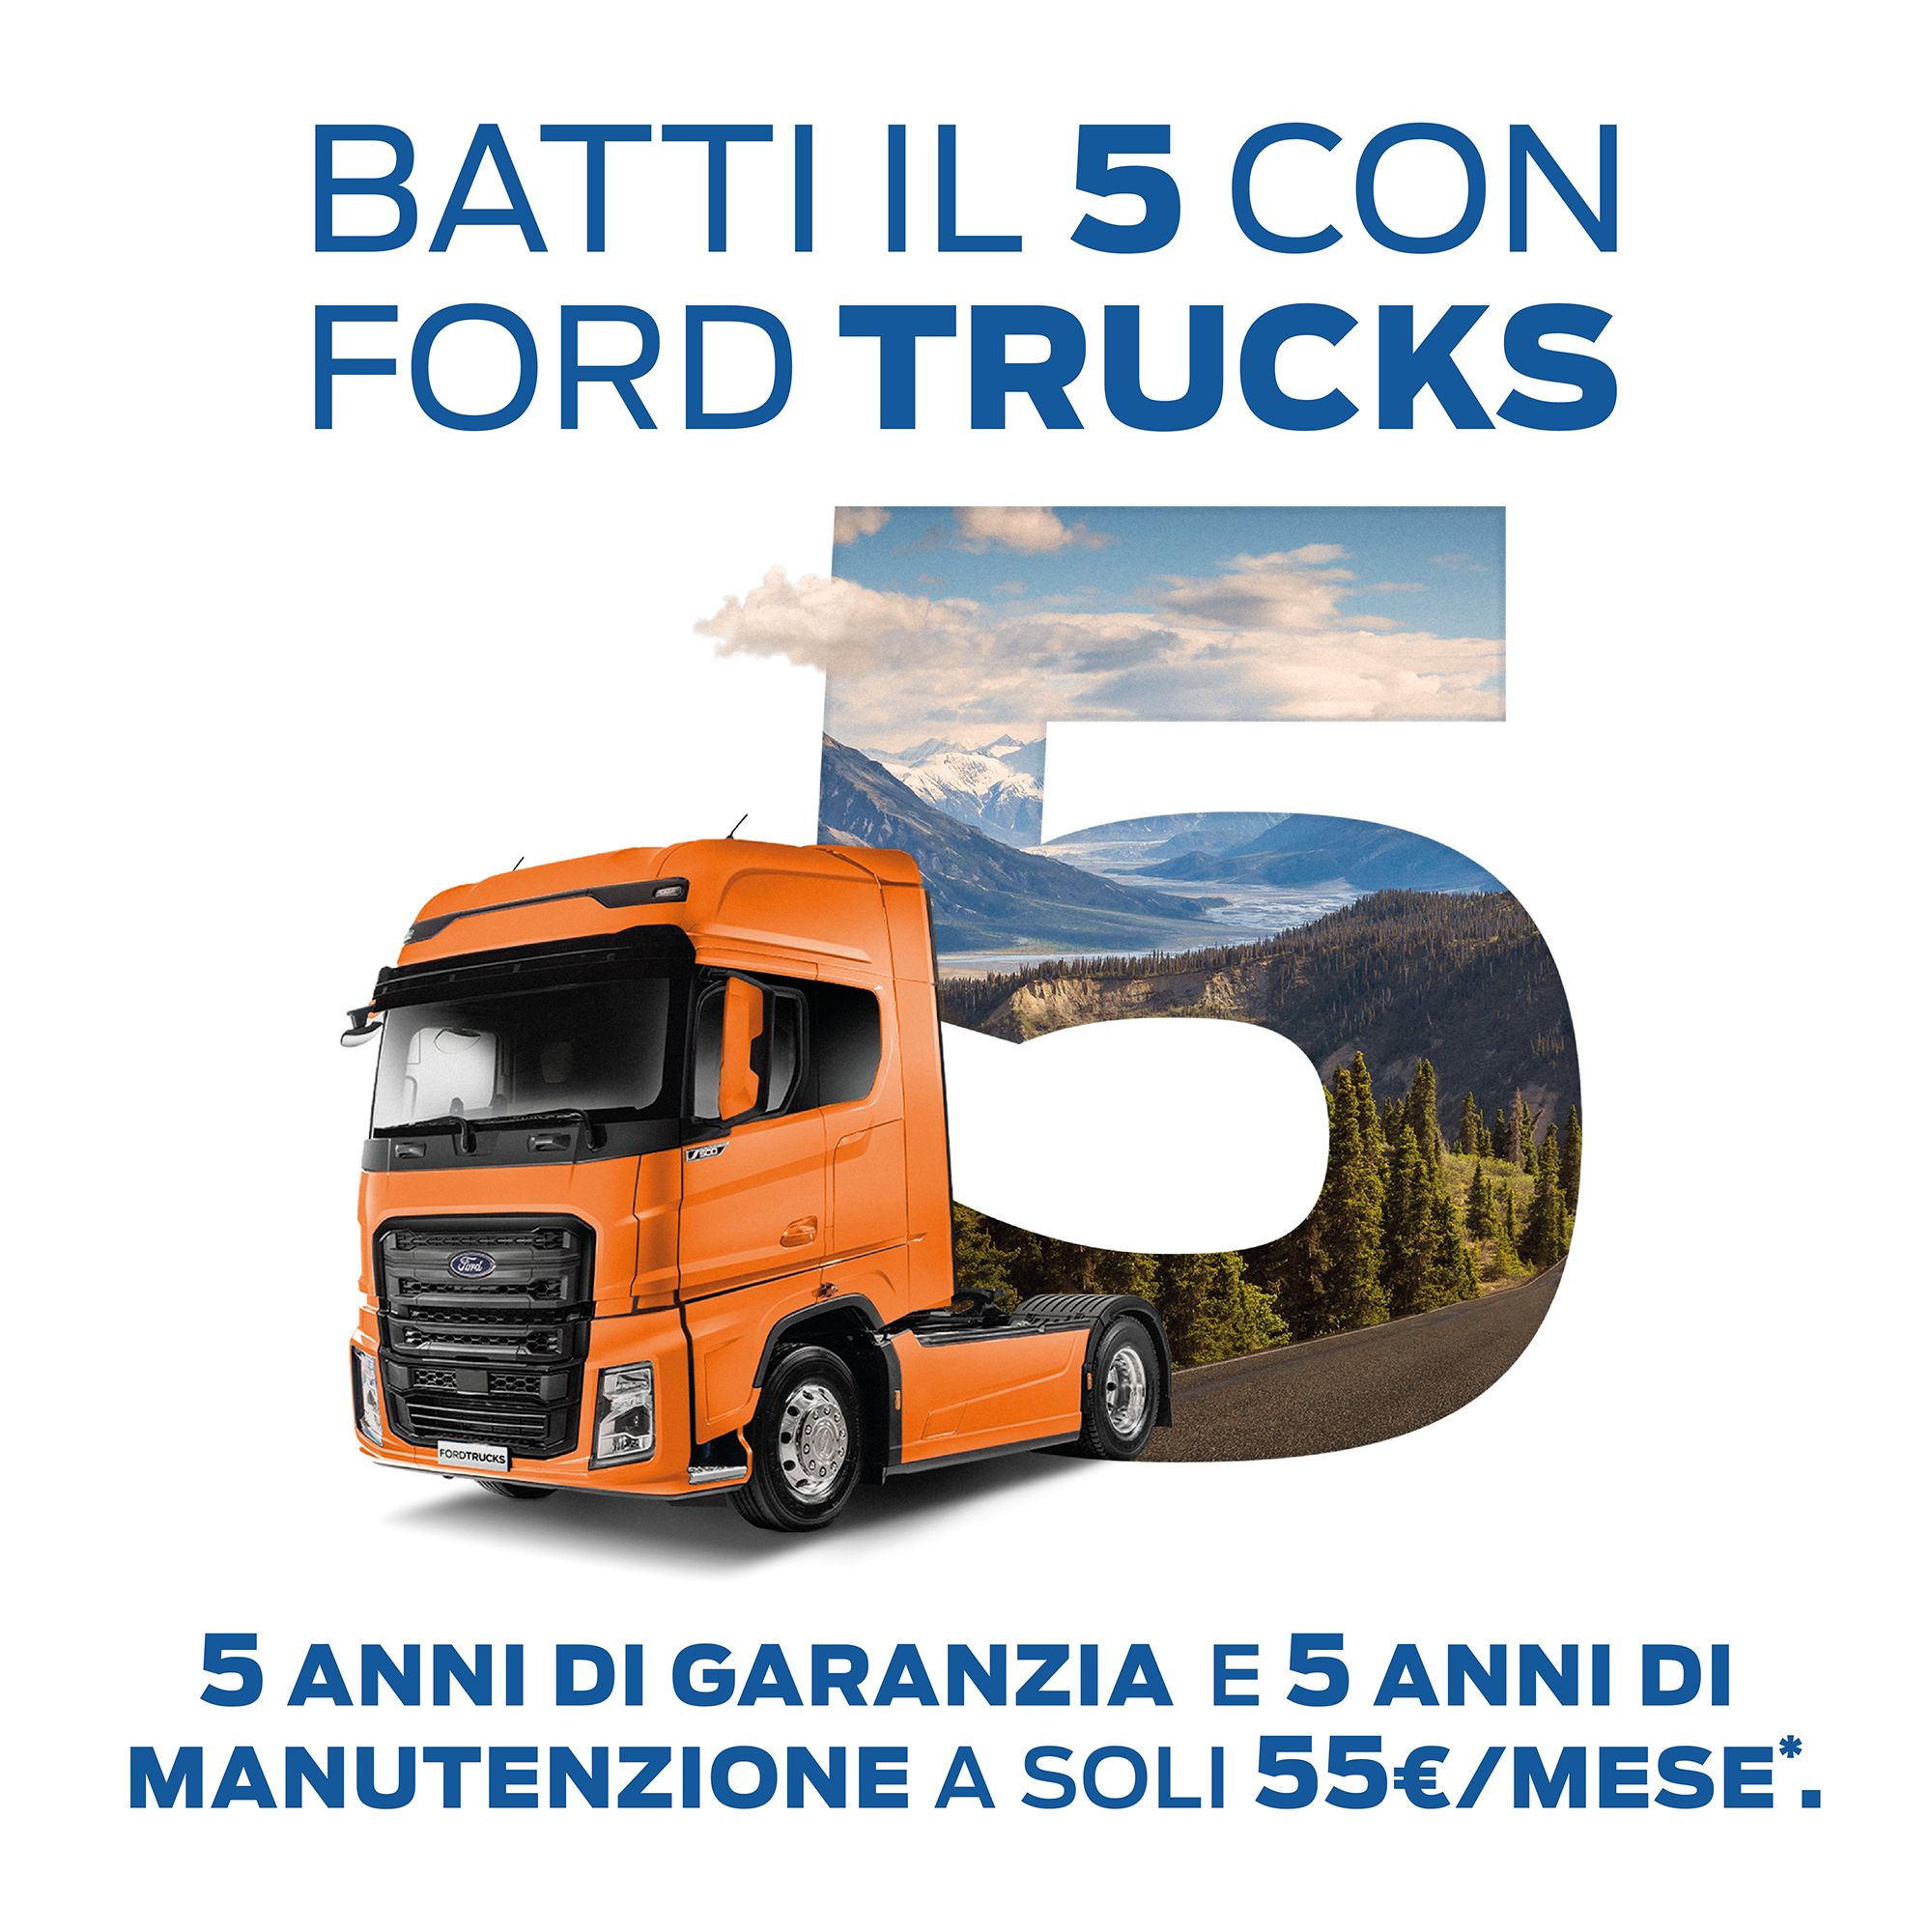 Batti il 5 con Ford Trucks!
5 anni di Garanzia e 5 anni di manutenzione a soli 55€/ mese!*